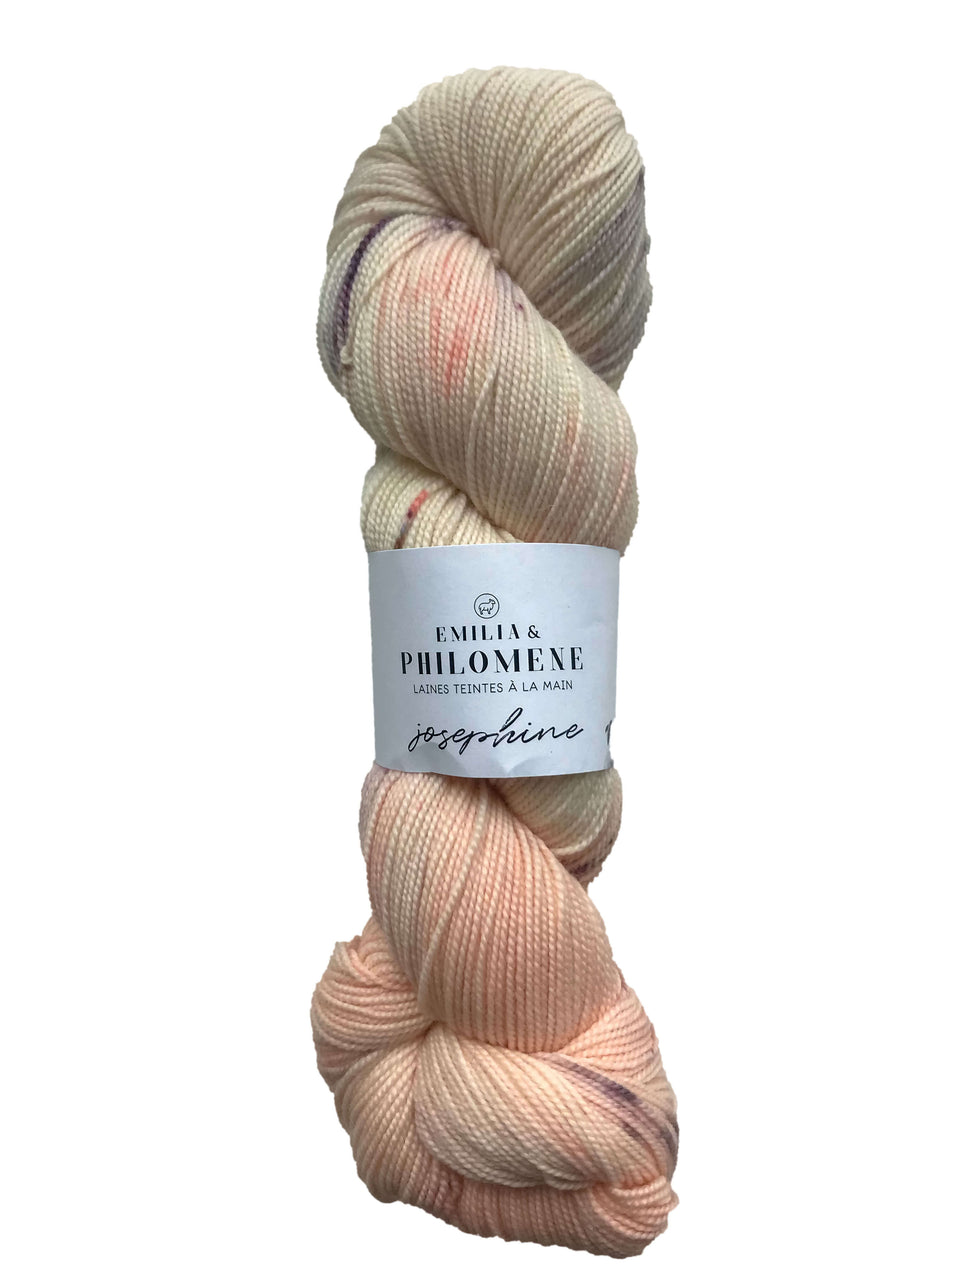 Emilia Philomene yarn Josephine Les Gourmandises  - 100% Merino Wool Hand Dyed